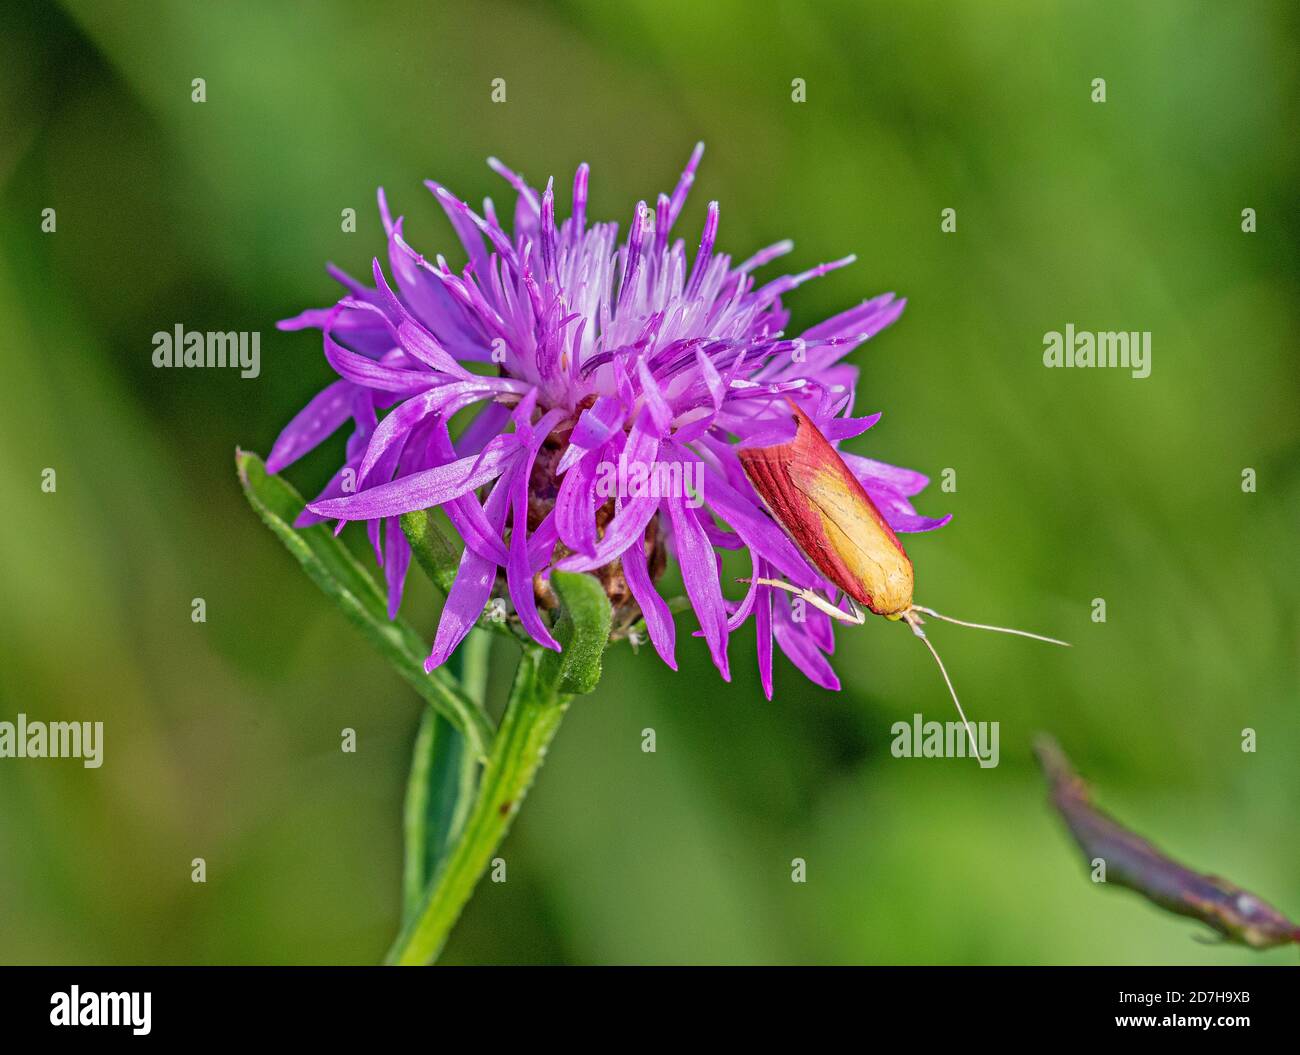 Polilla de hocico (Oncocera semirubella), sobre una flor de hierba, Alemania, Baviera Foto de stock